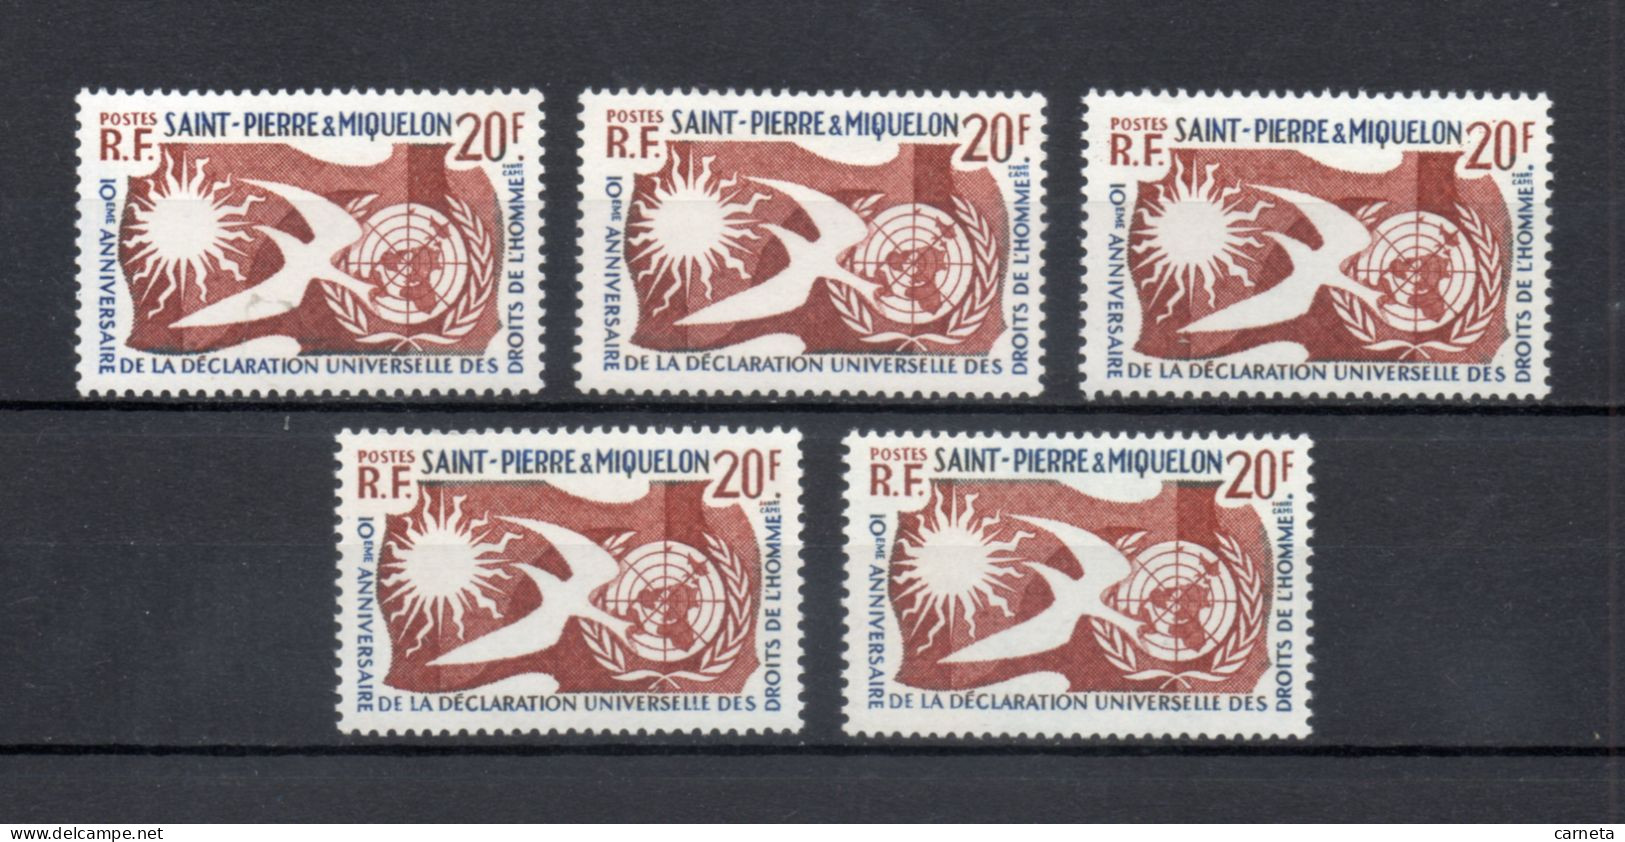 SAINT PIERRE ET MIQUELON N° 358 CINQ EXEMPLAIRES   NEUF SANS CHARNIERE COTE  20.00€     DROITS DE L'HOMME - Unused Stamps